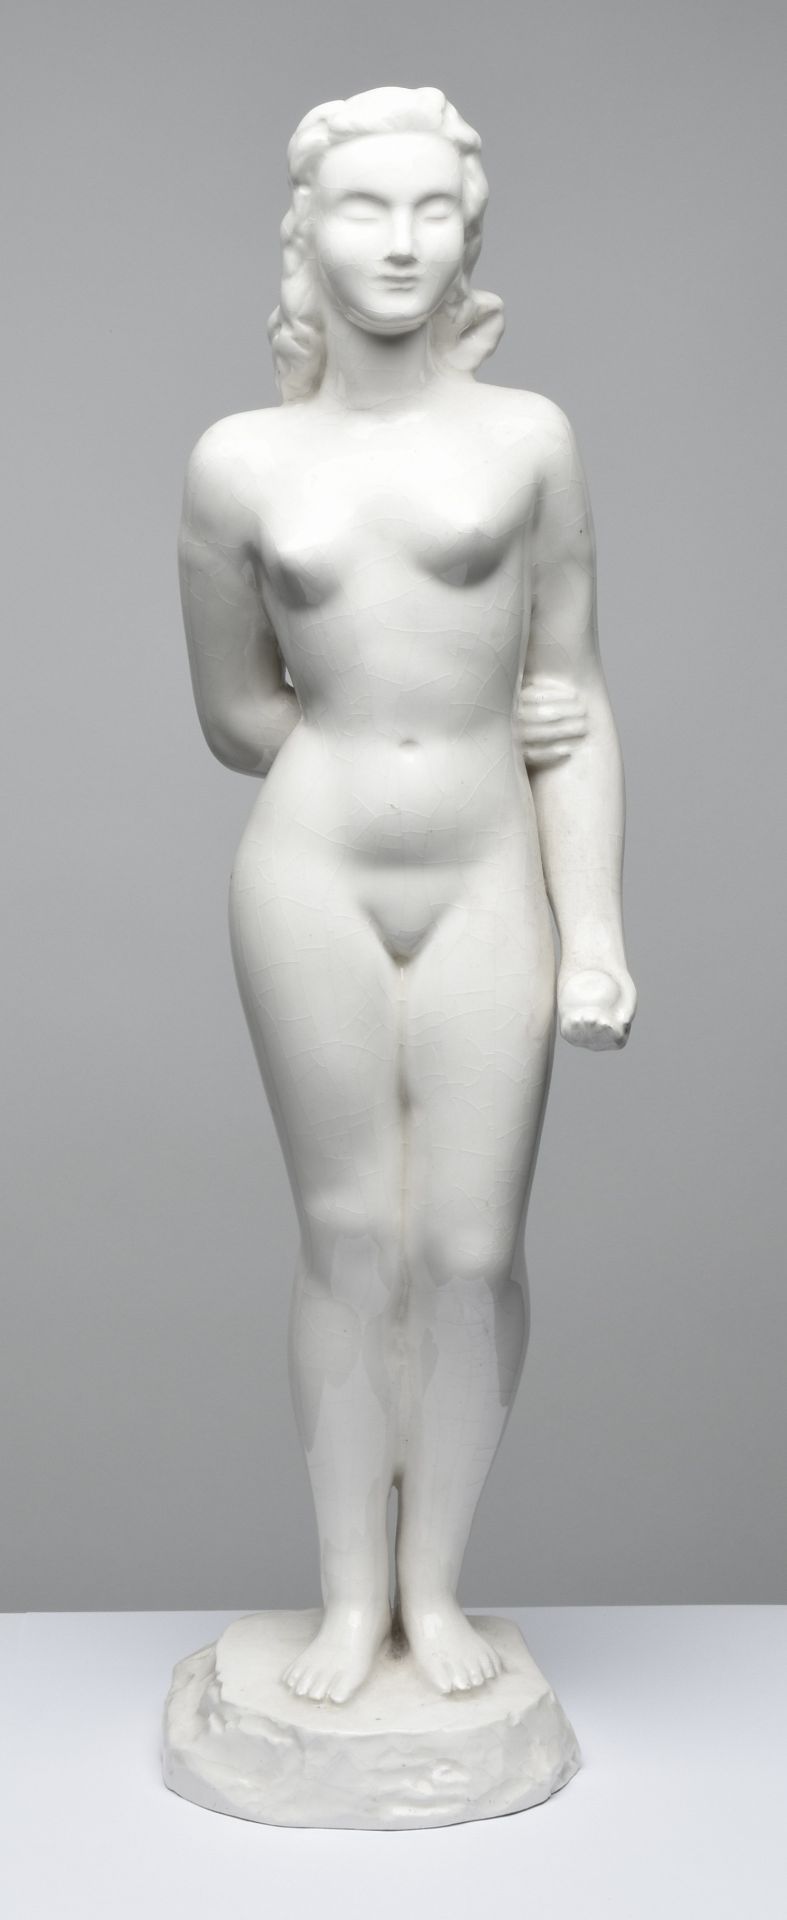 Weibliche Plastik Keramik, in Weiß glasiert, vollplastischer Damenakt als Standbild, in der linken - Image 2 of 2